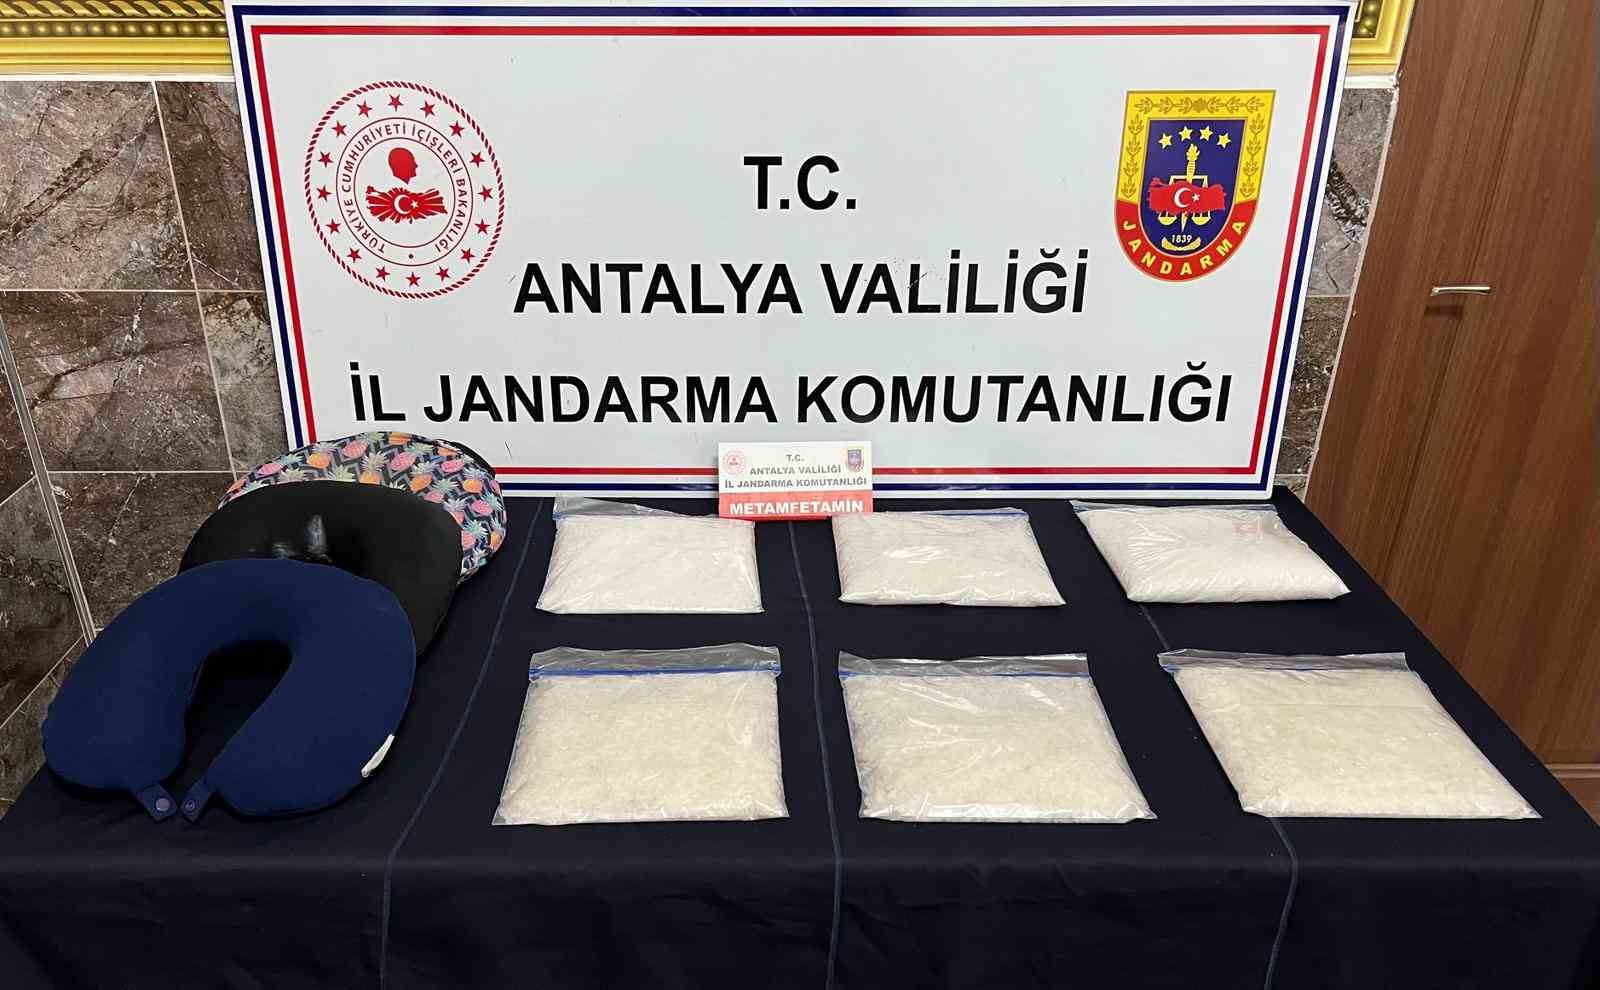 Antalya’da yolcu yastığına saklı 6 kilo uyuşturucu madde ele geçirildi